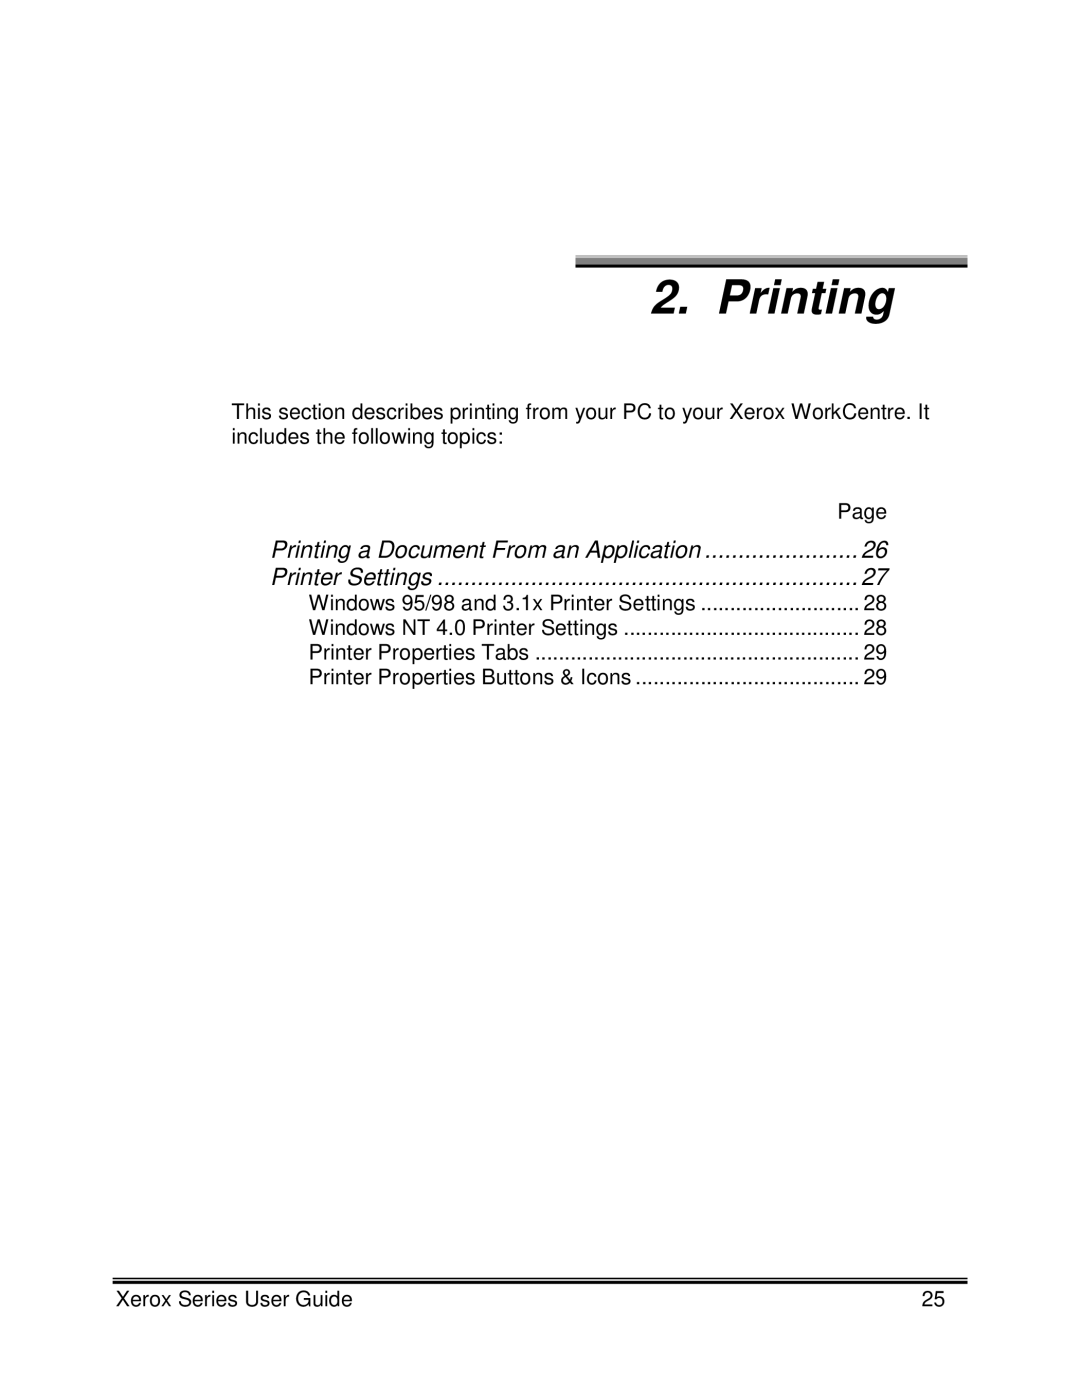 Xerox XK35C, XK25C manual Printing, Windows 95/98 and 3.1x Printer Settings, Windows NT 4.0 Printer Settings 